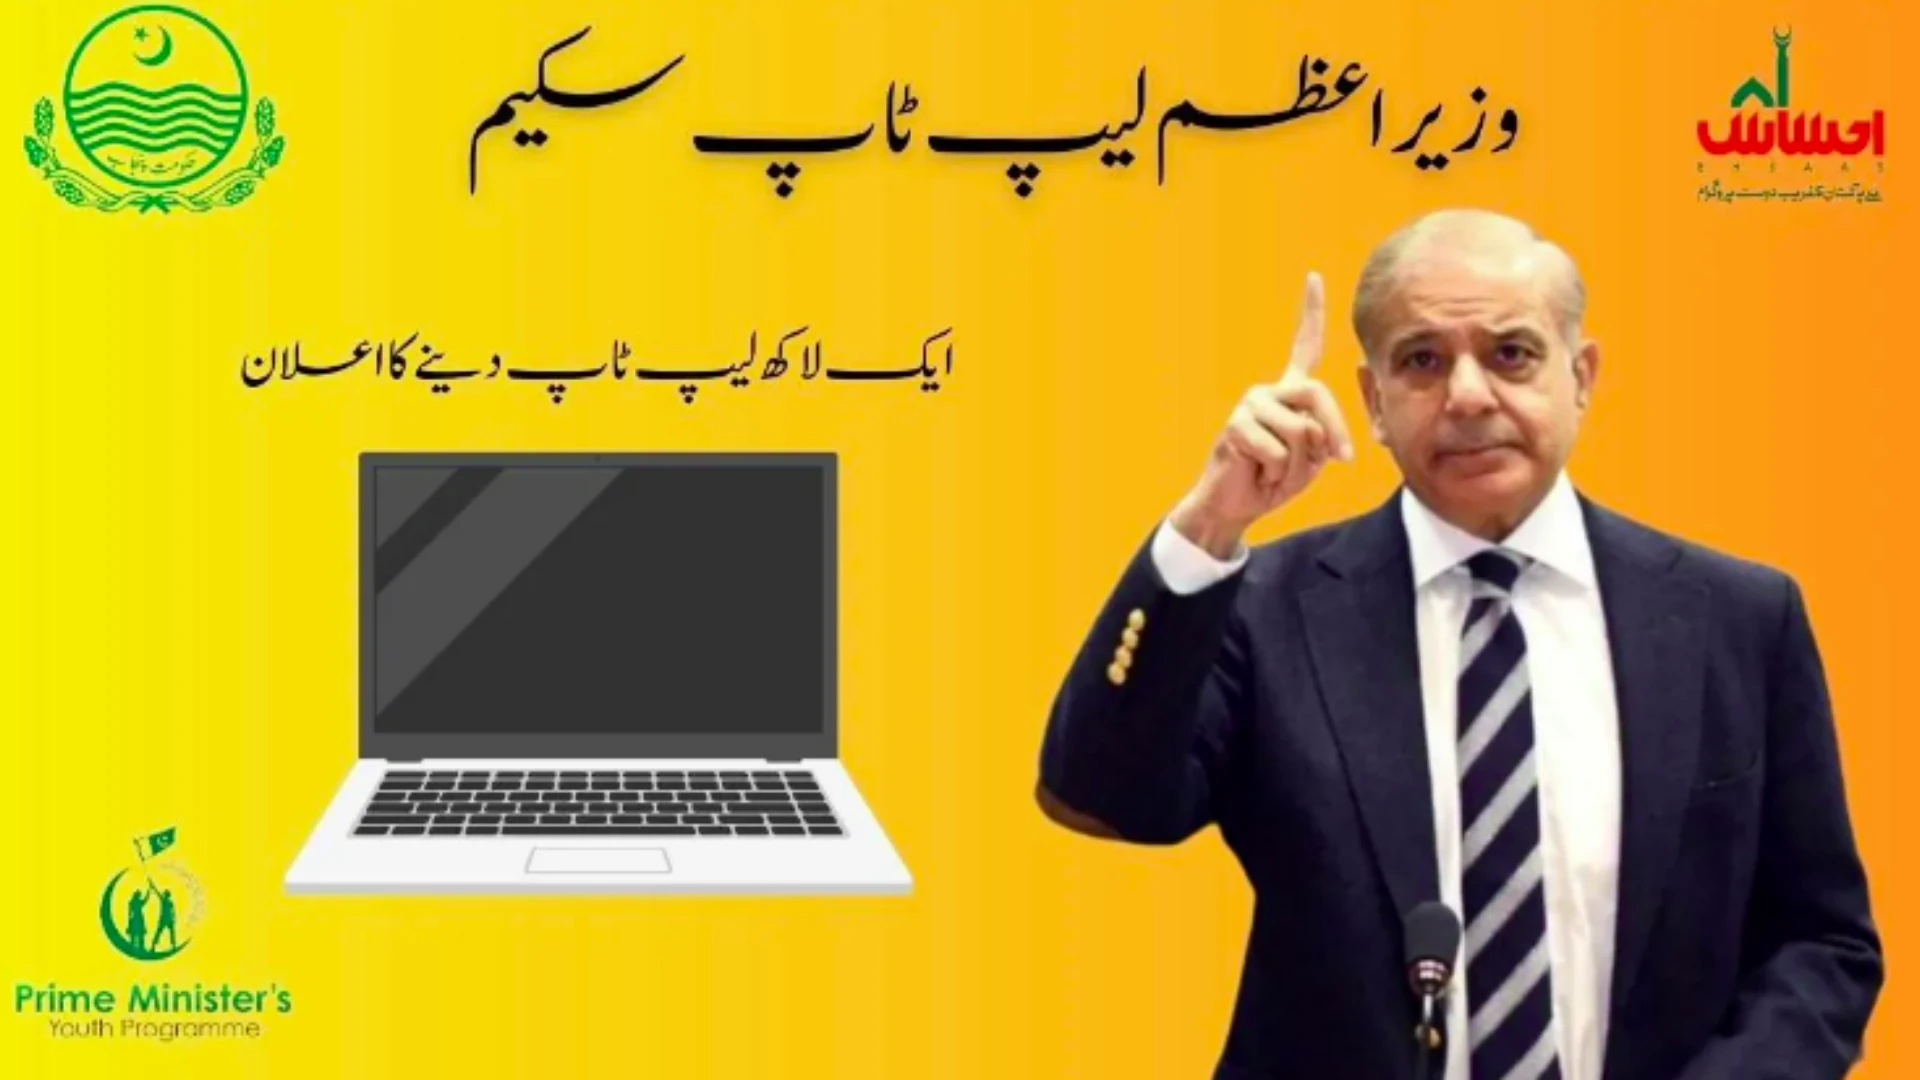 PM Shehbaz Sharif Laptop Scheme